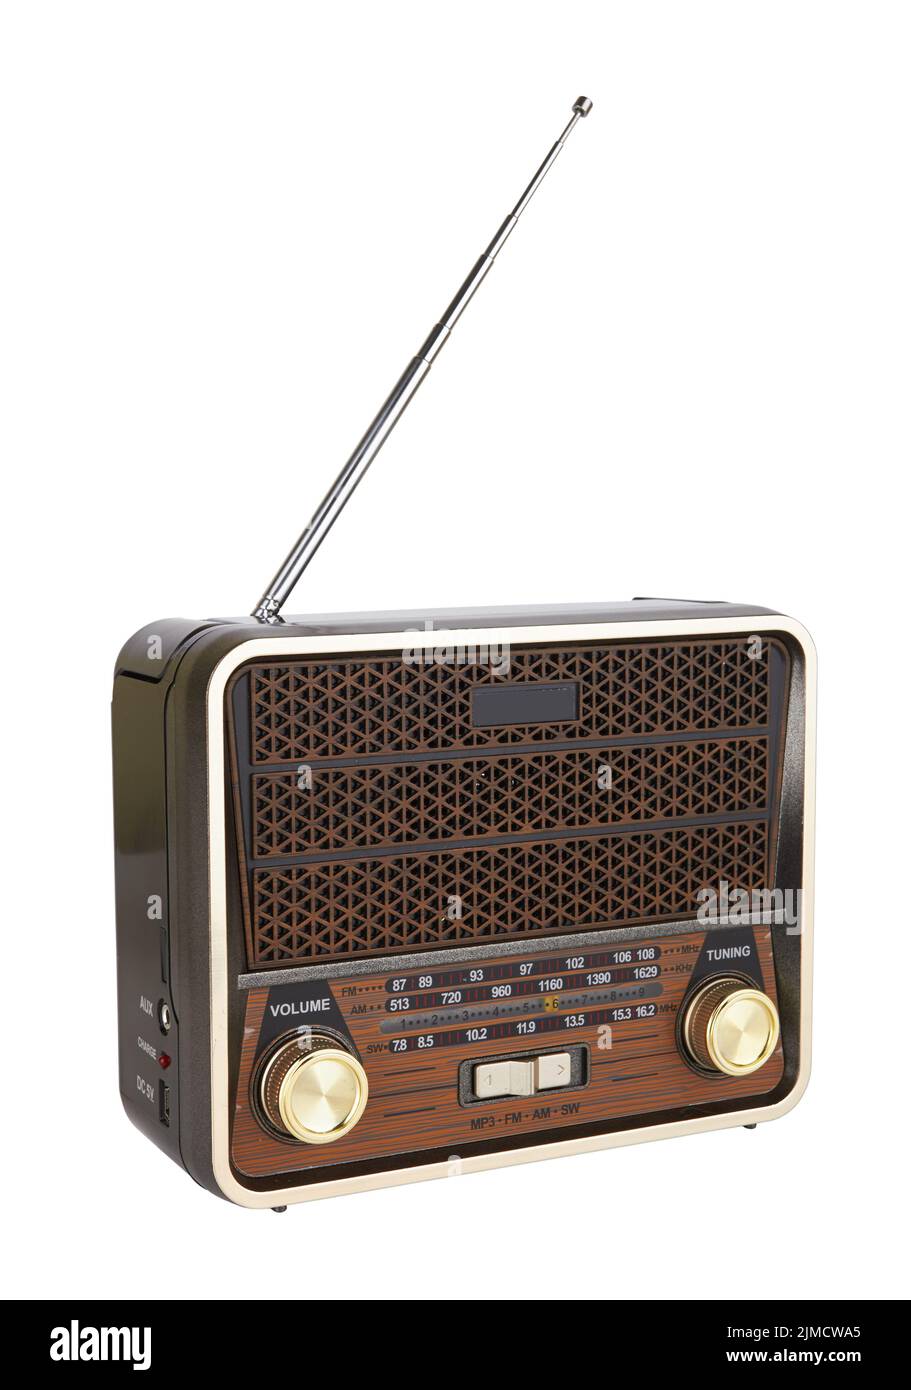 Récepteur radio rétro portable objet vintage isolé arrière-plan blanc Banque D'Images